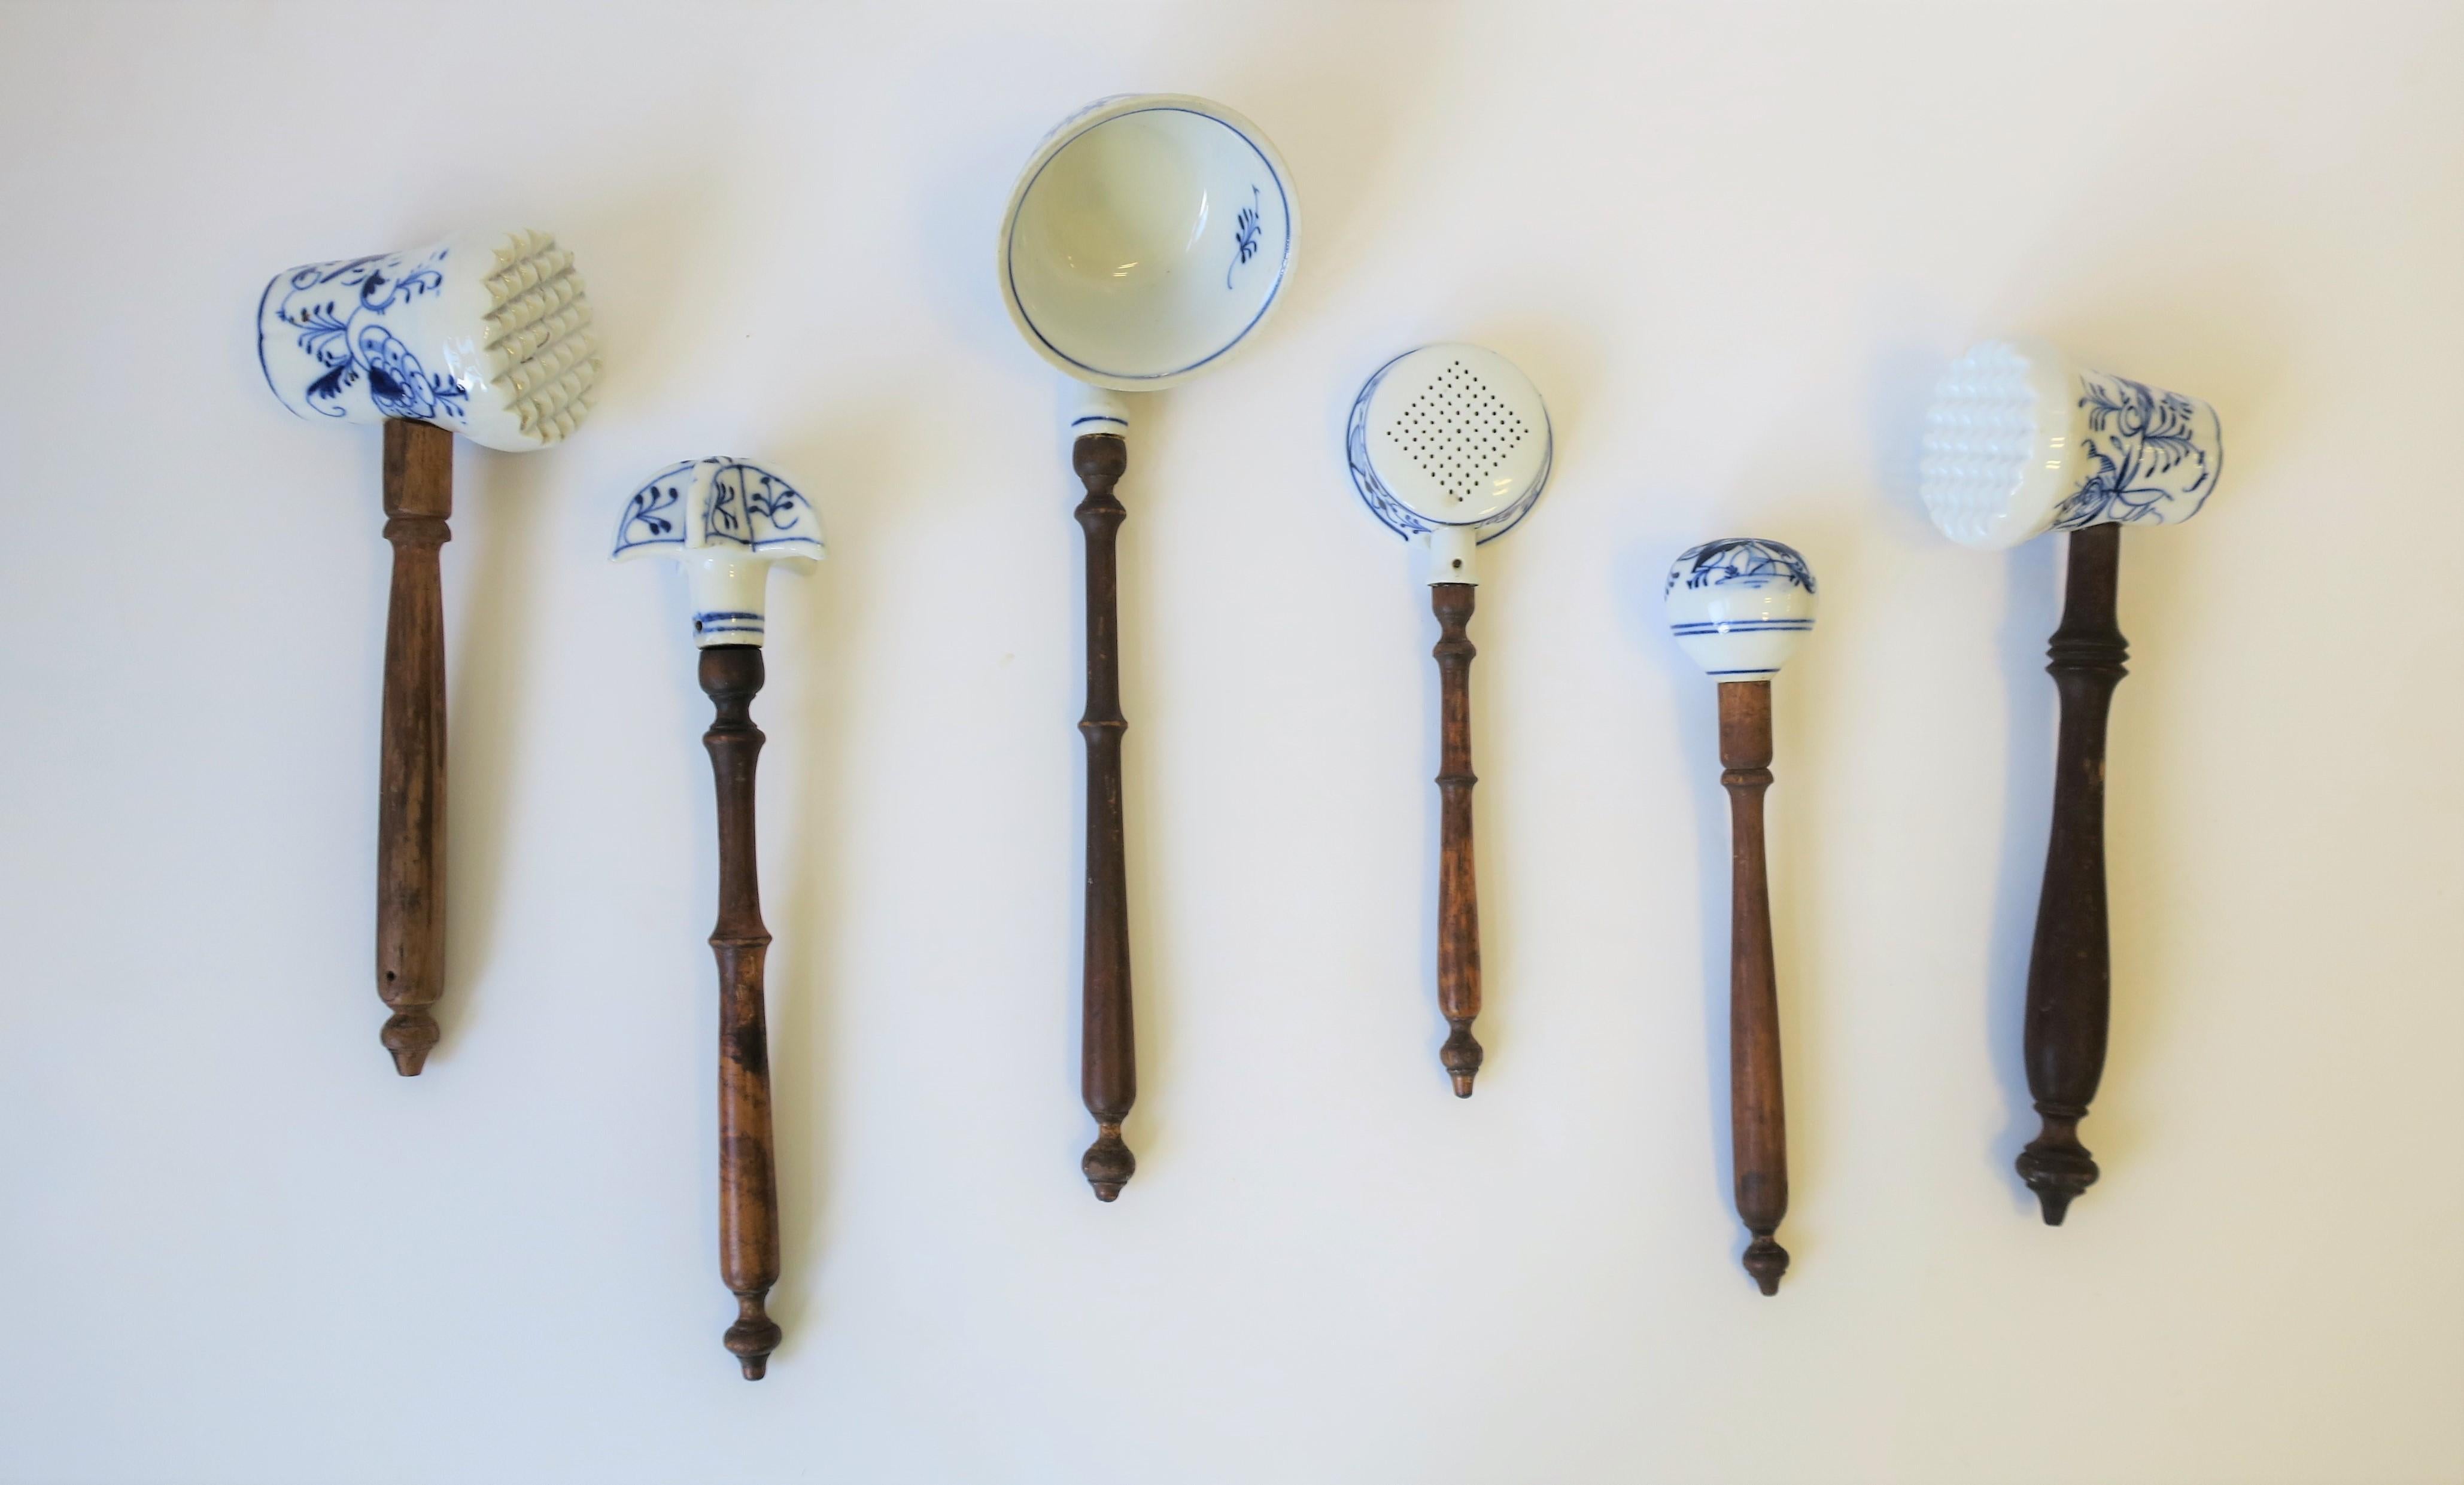 Bel ensemble ancien de 6 pièces de cuisine/utenciles en porcelaine de Meissen bleu et blanc à motif d'oignon avec poignées tournées en bois, vers la fin du 19e siècle, Allemagne. 

Chaque mesure, de gauche à droite de l'image 1 : 
1. Mallet/tendeur